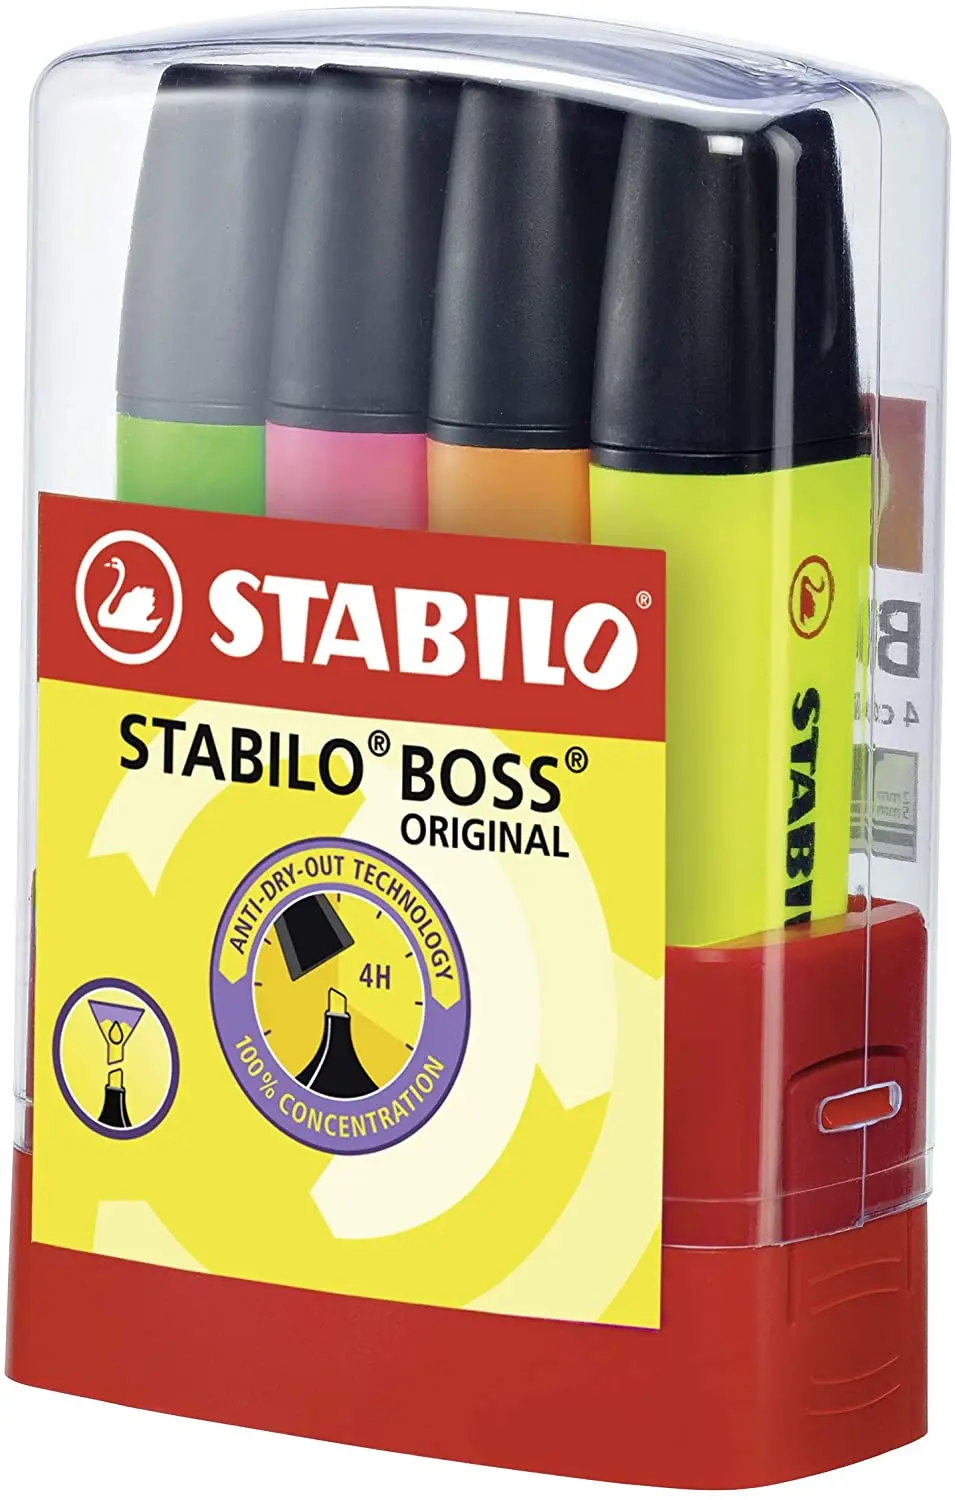 Stabilo Boss 70 Parade Pack de 4 Marcadores Fluorescentes - Trazo entre 2 y 5mm - Recargable - Tinta